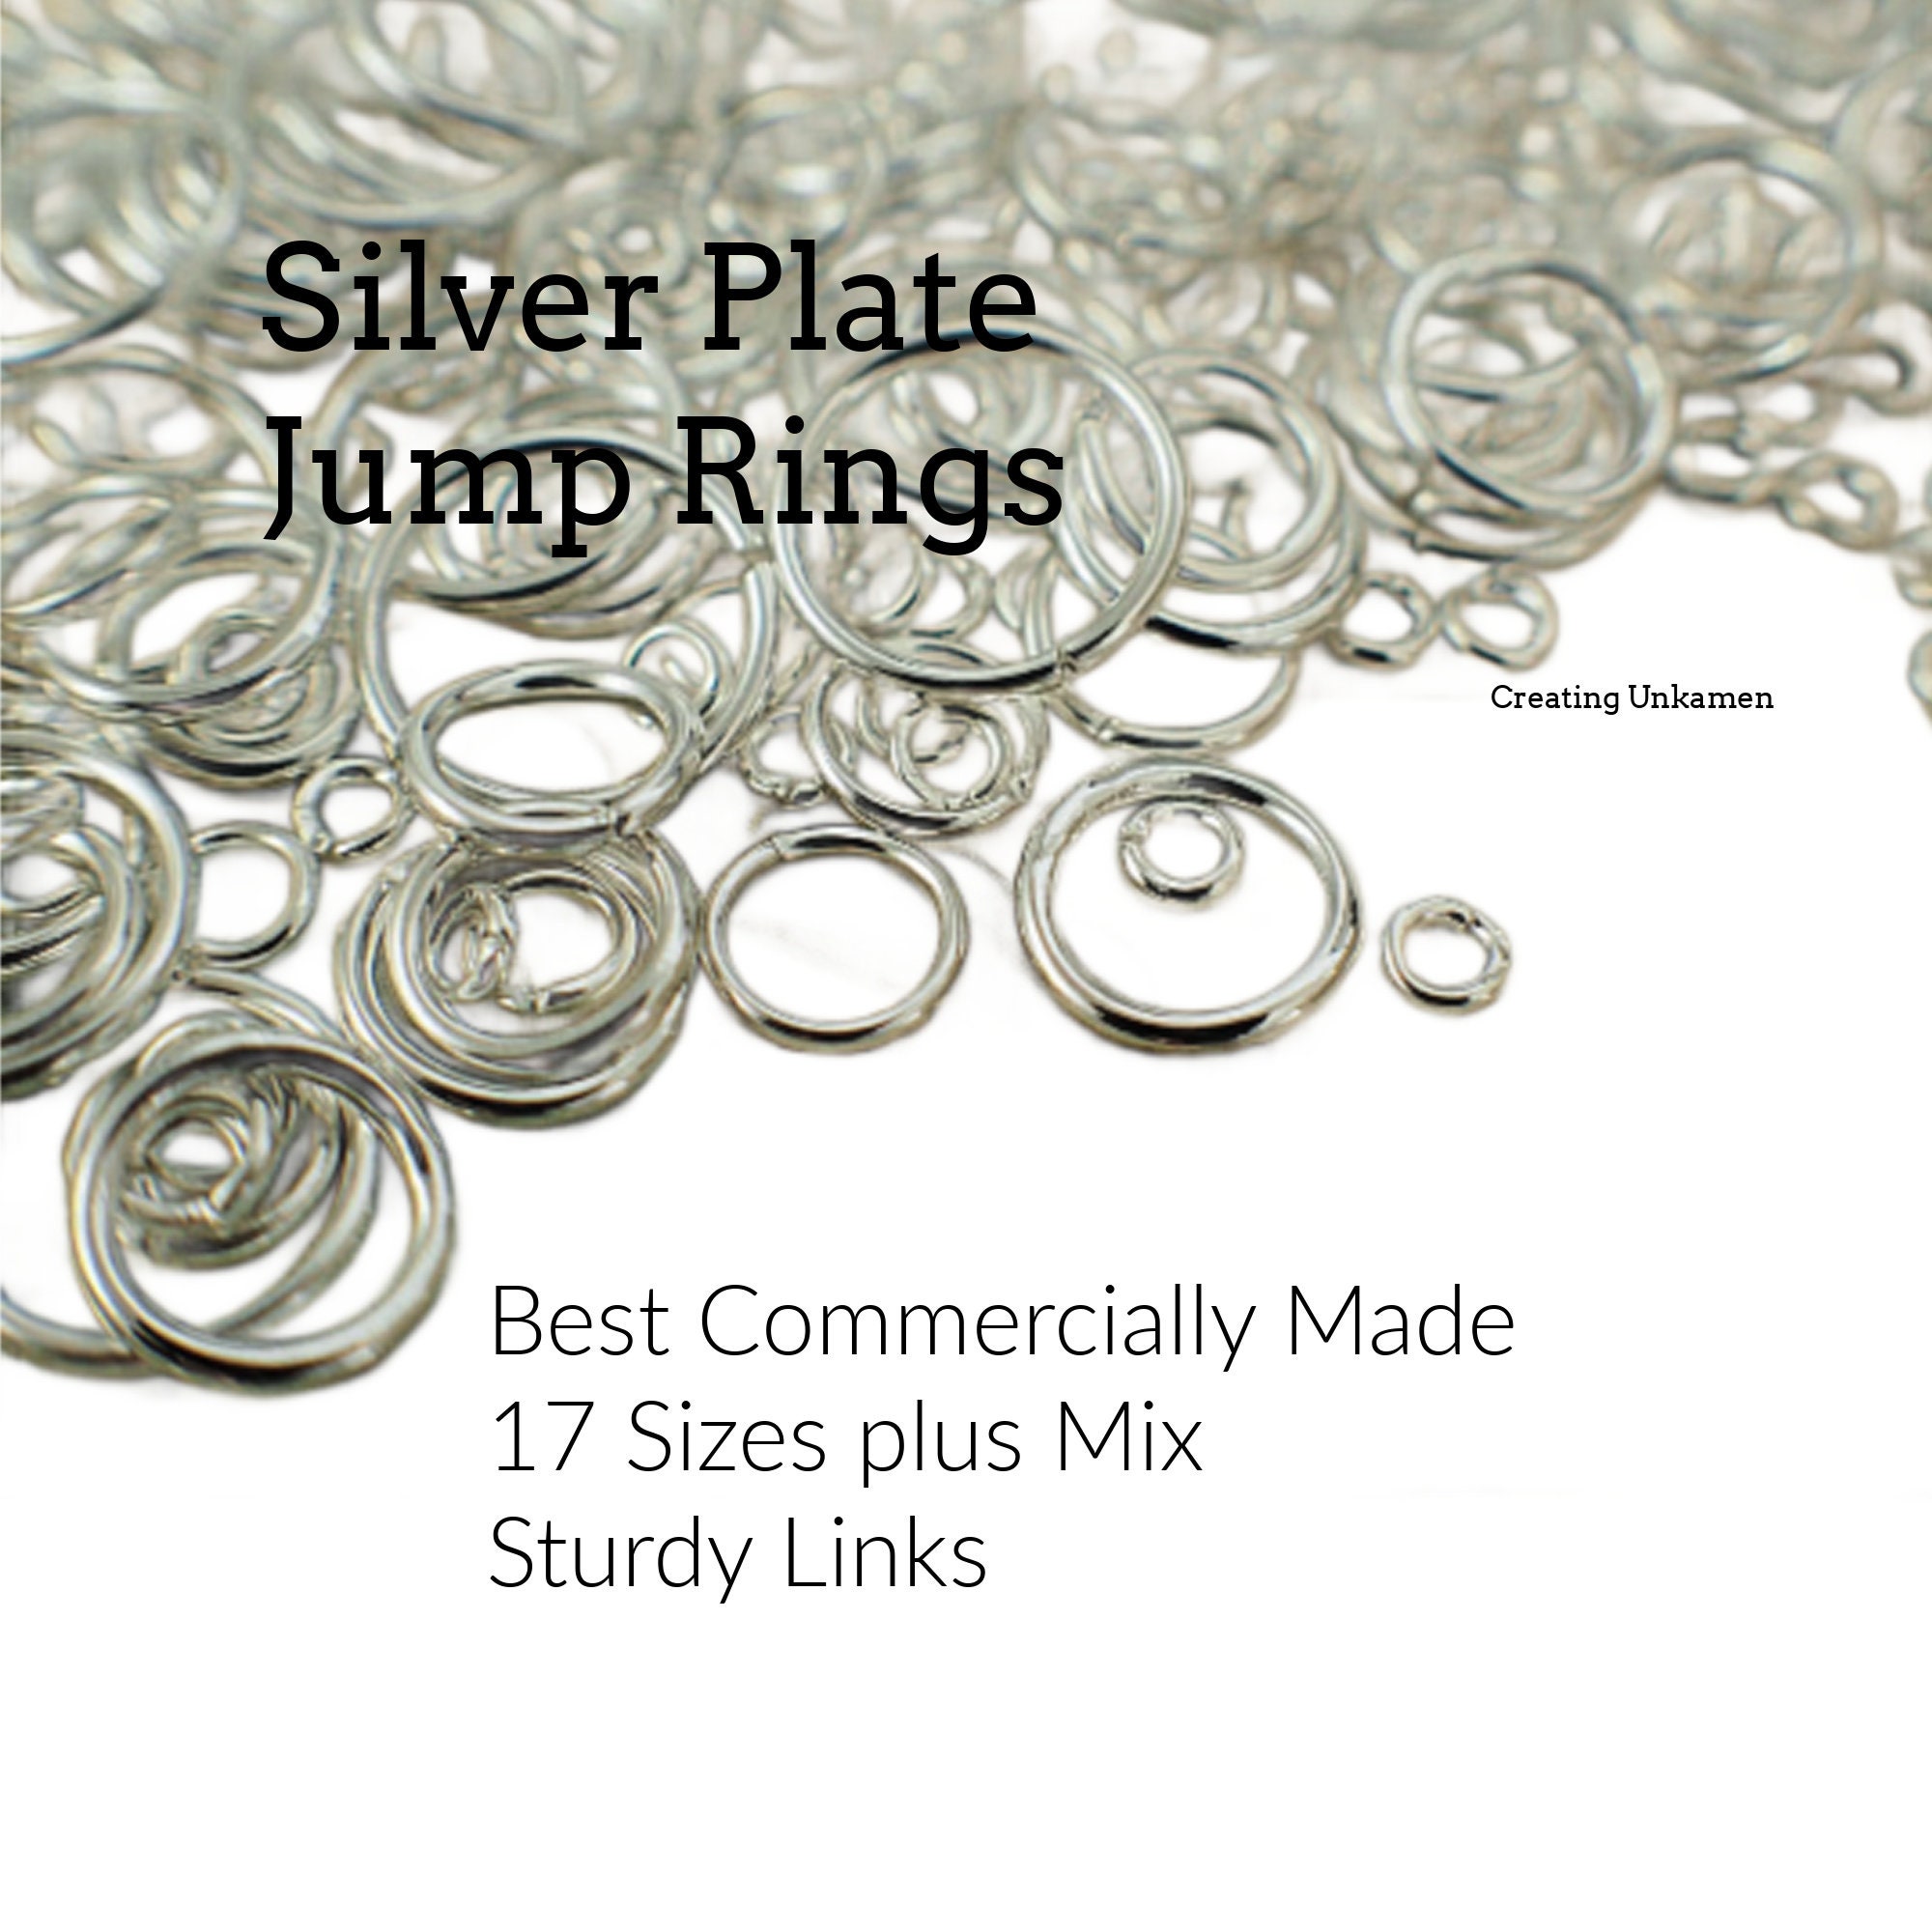 100 Nickel Silver Jump Rings - Handmade in Your Choice of Gauge 10